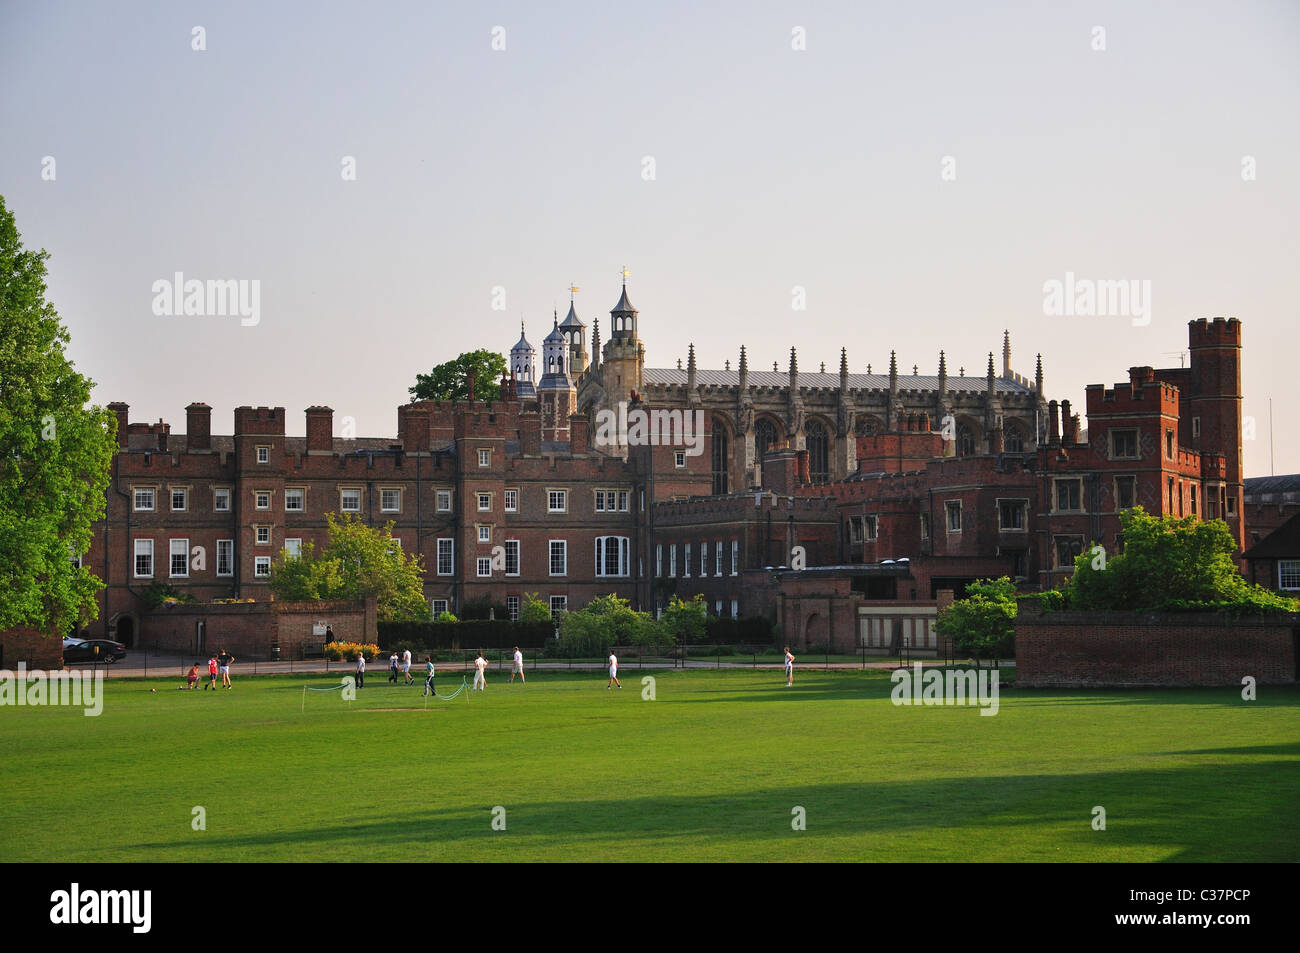 Eton College showing playing fields, Eton, Berkshire, England, United Kingdom Stock Photo